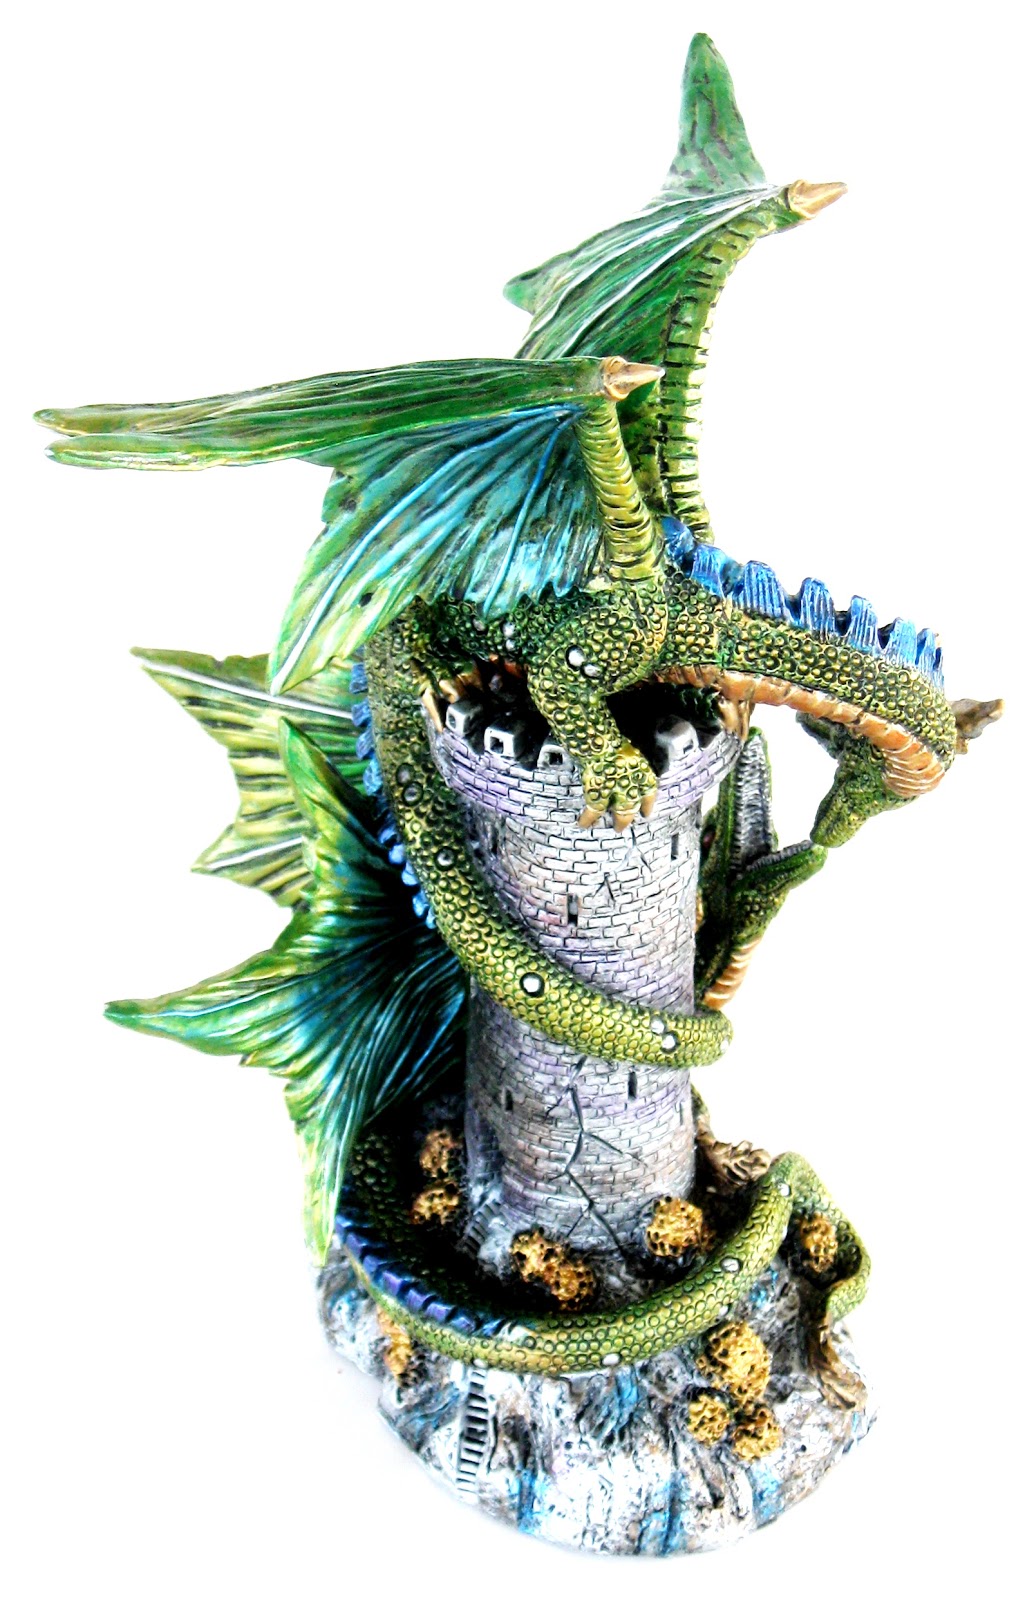 Toys and Stuff: Franklin Mint 'The Kingdom Discordia' Dragon Sculpt